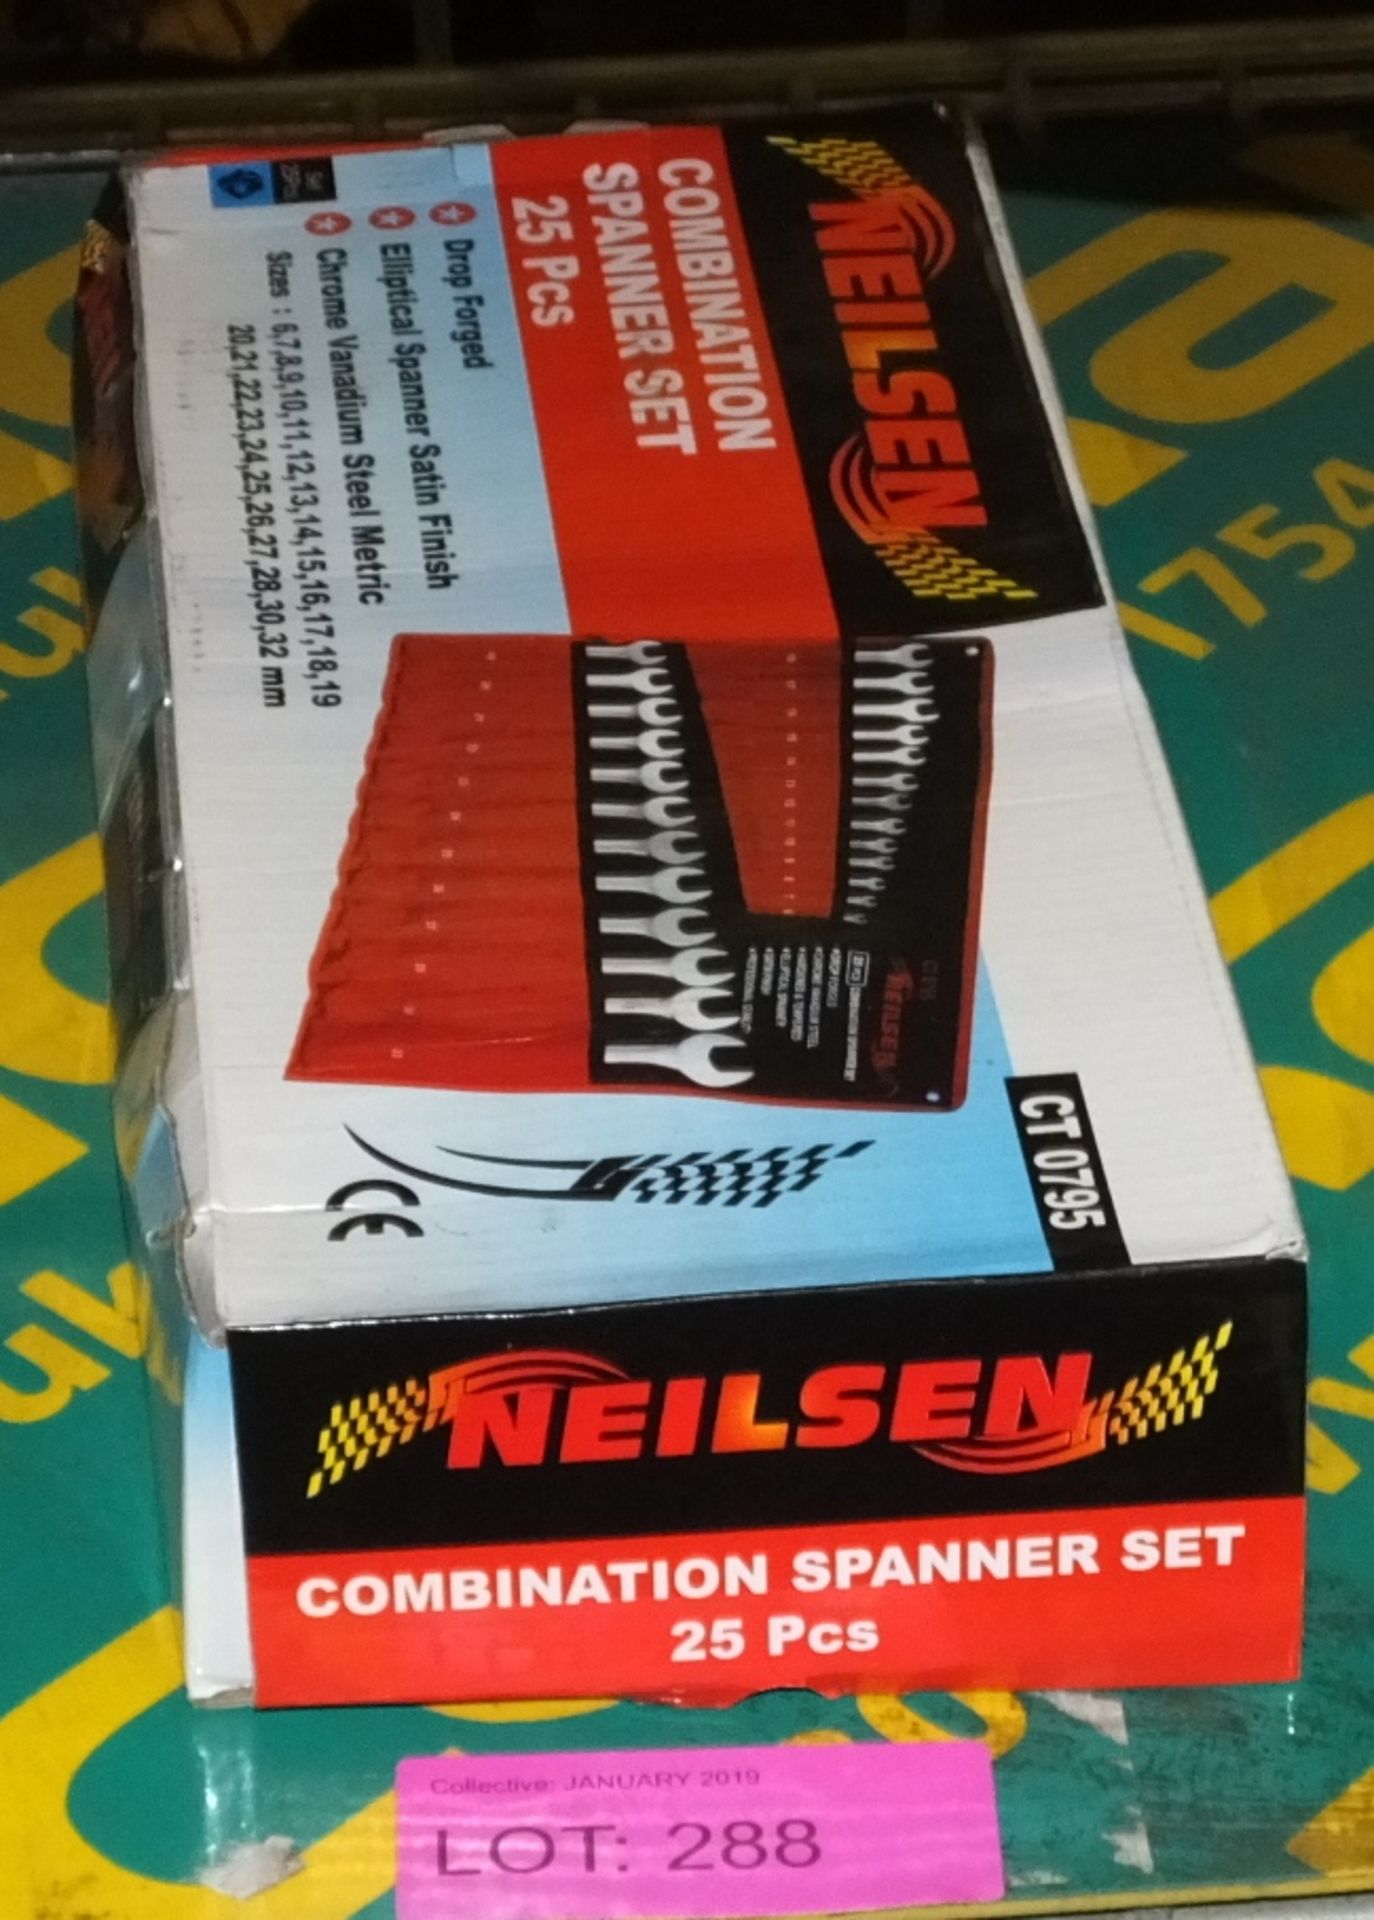 Neilsen CT0795 Combination Spanner Set - 25 pcs